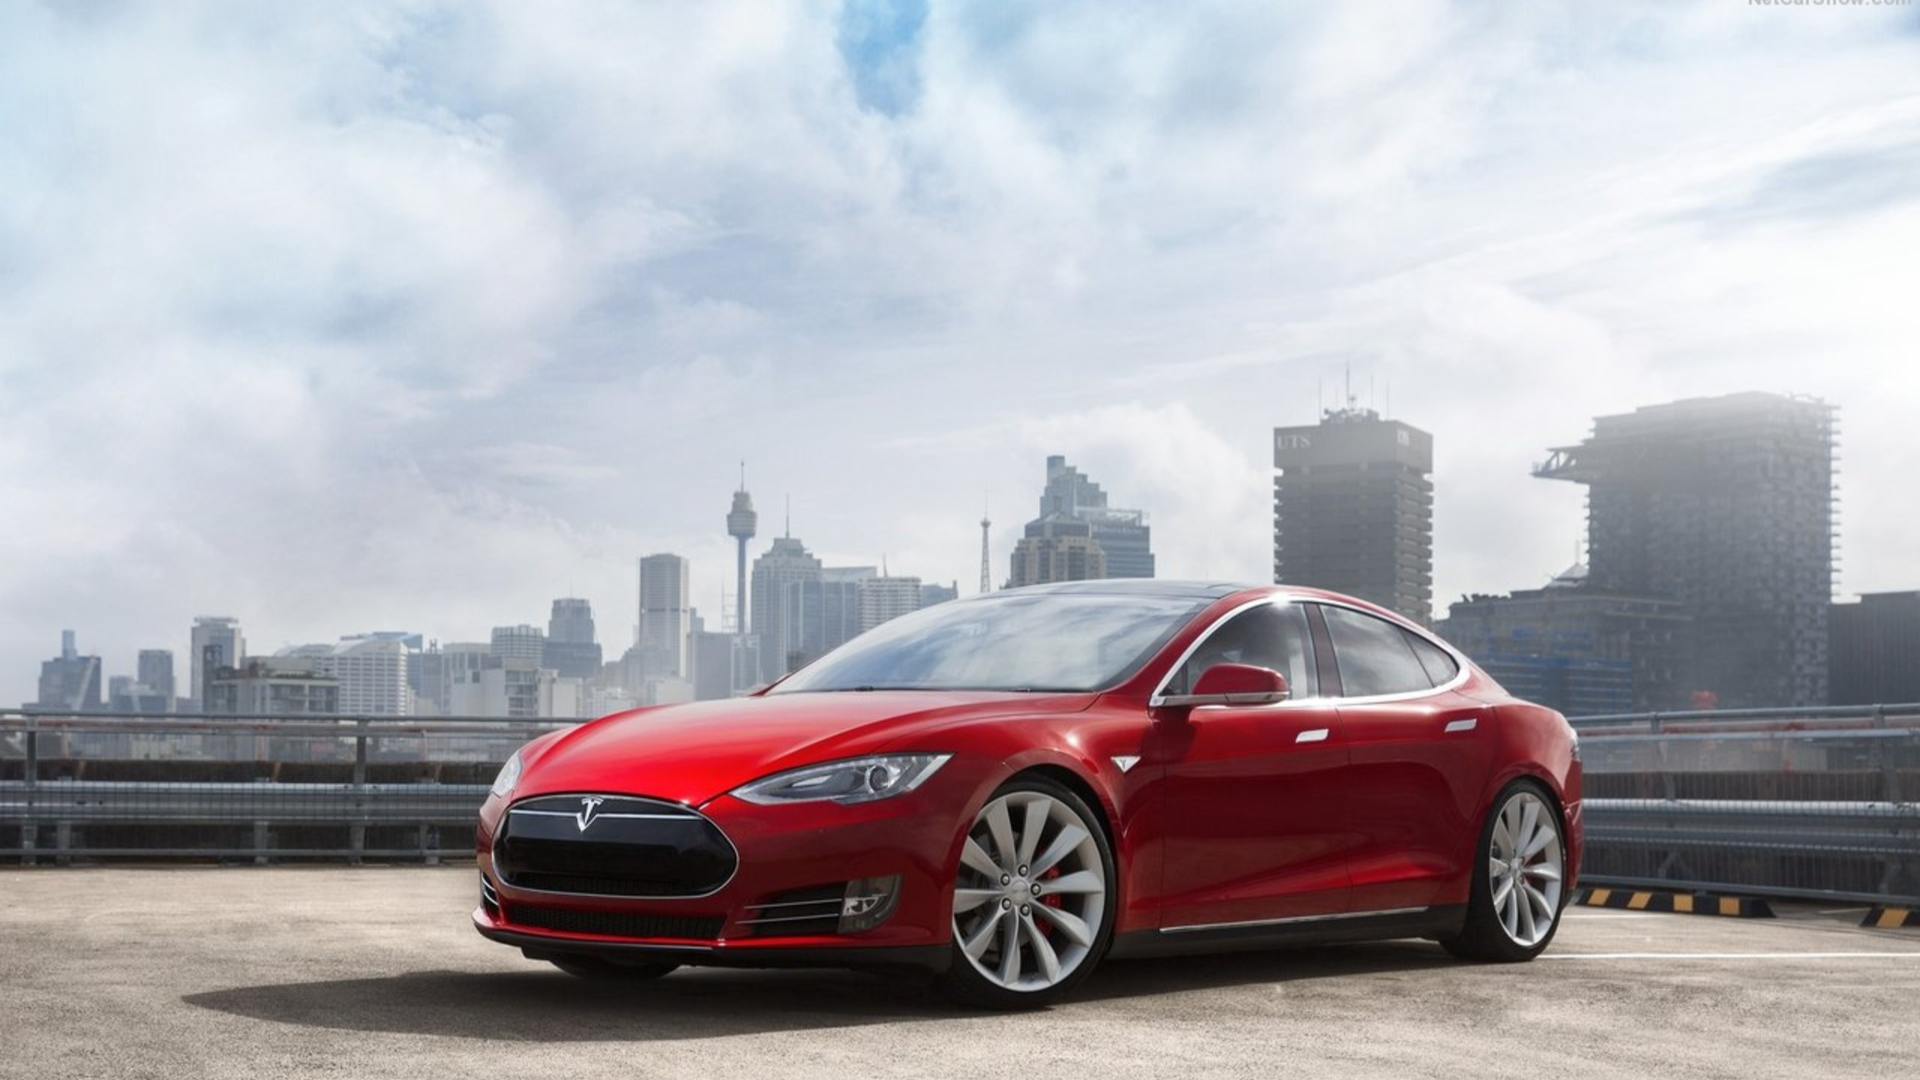 2013 Tesla Model S red EV parked